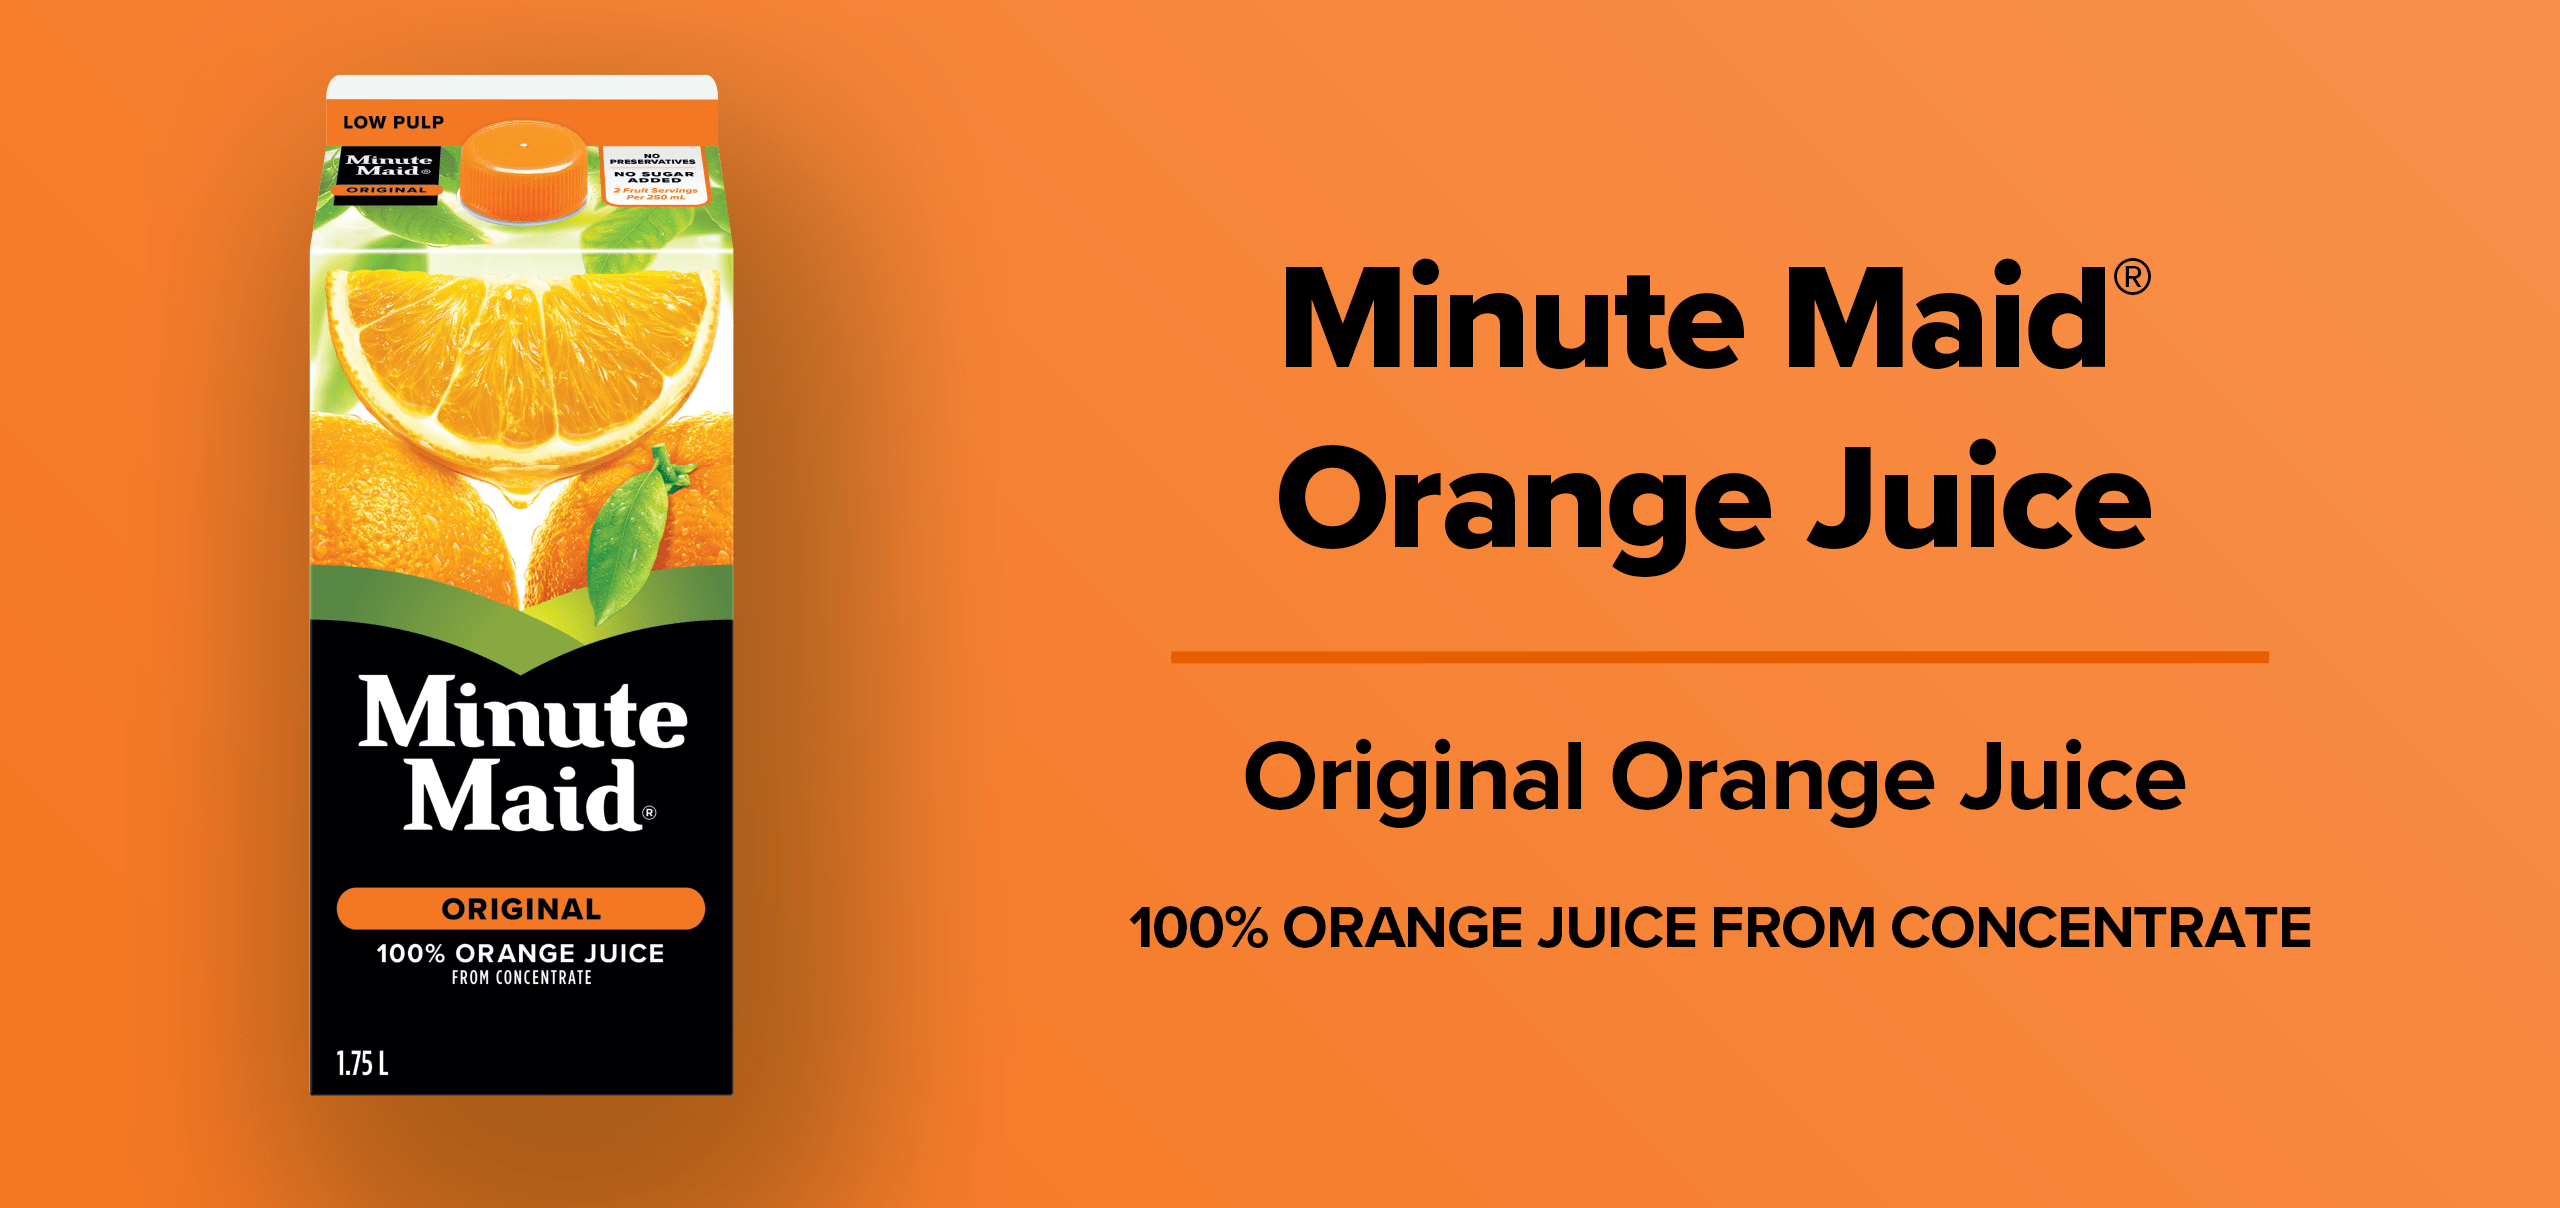 Minute Maid Orange Juice. Original Orange Juice. 100 % orange juice from concentrate.